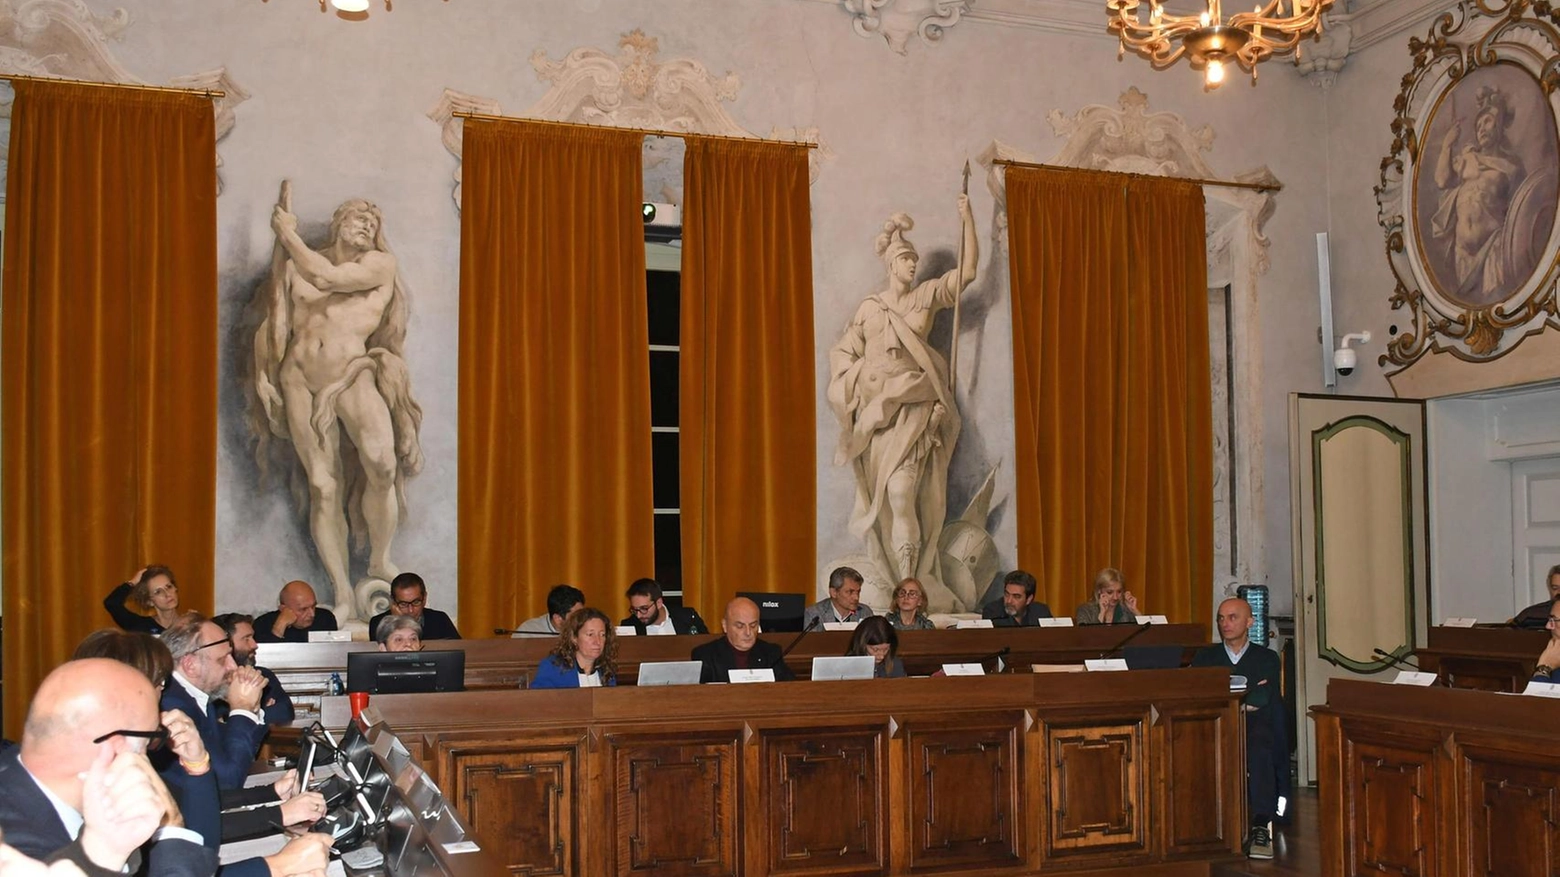 Sette consiglieri comunali di Pavia si sono dichiarati incompatibili con interventi del Pgt. La delibera verrà portata in Consiglio il 4 aprile. La discussione sul Pgt dovrà avvenire entro il 25 aprile.